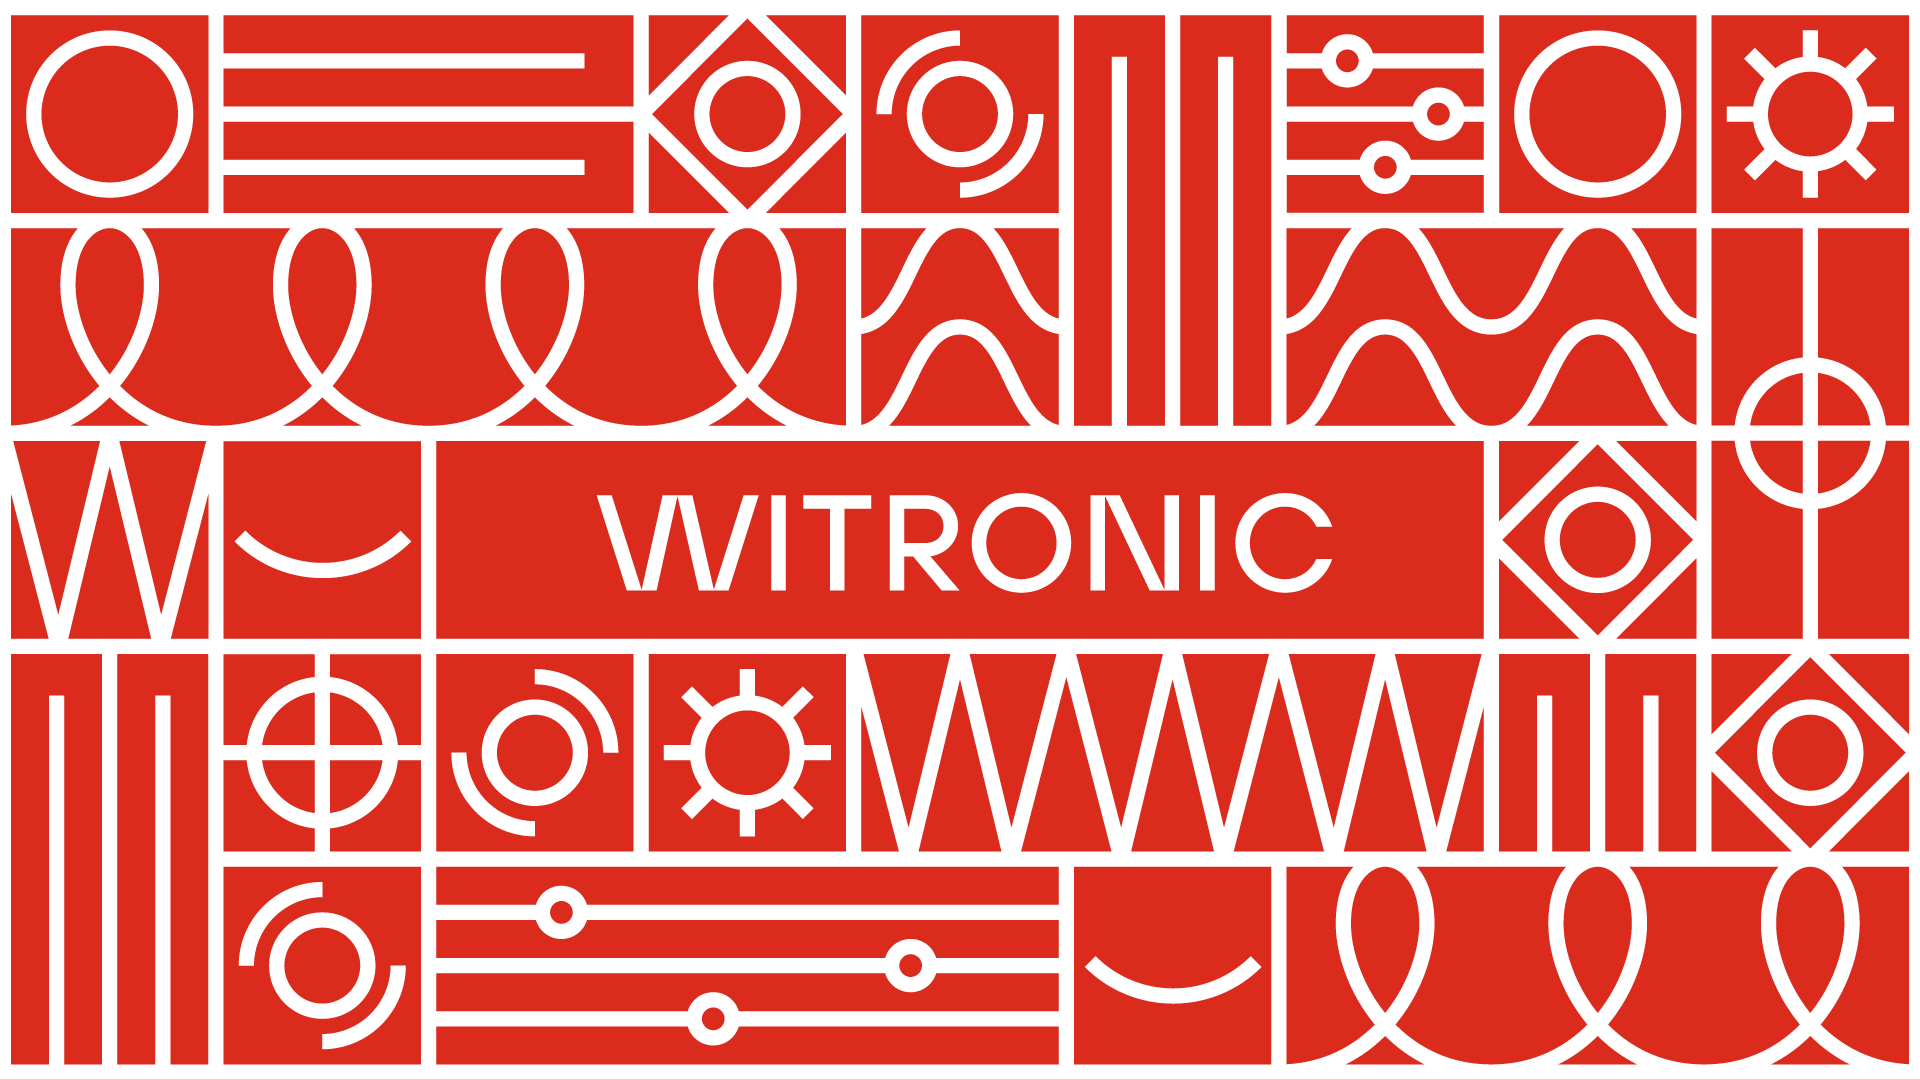 witronic_portfolio 1